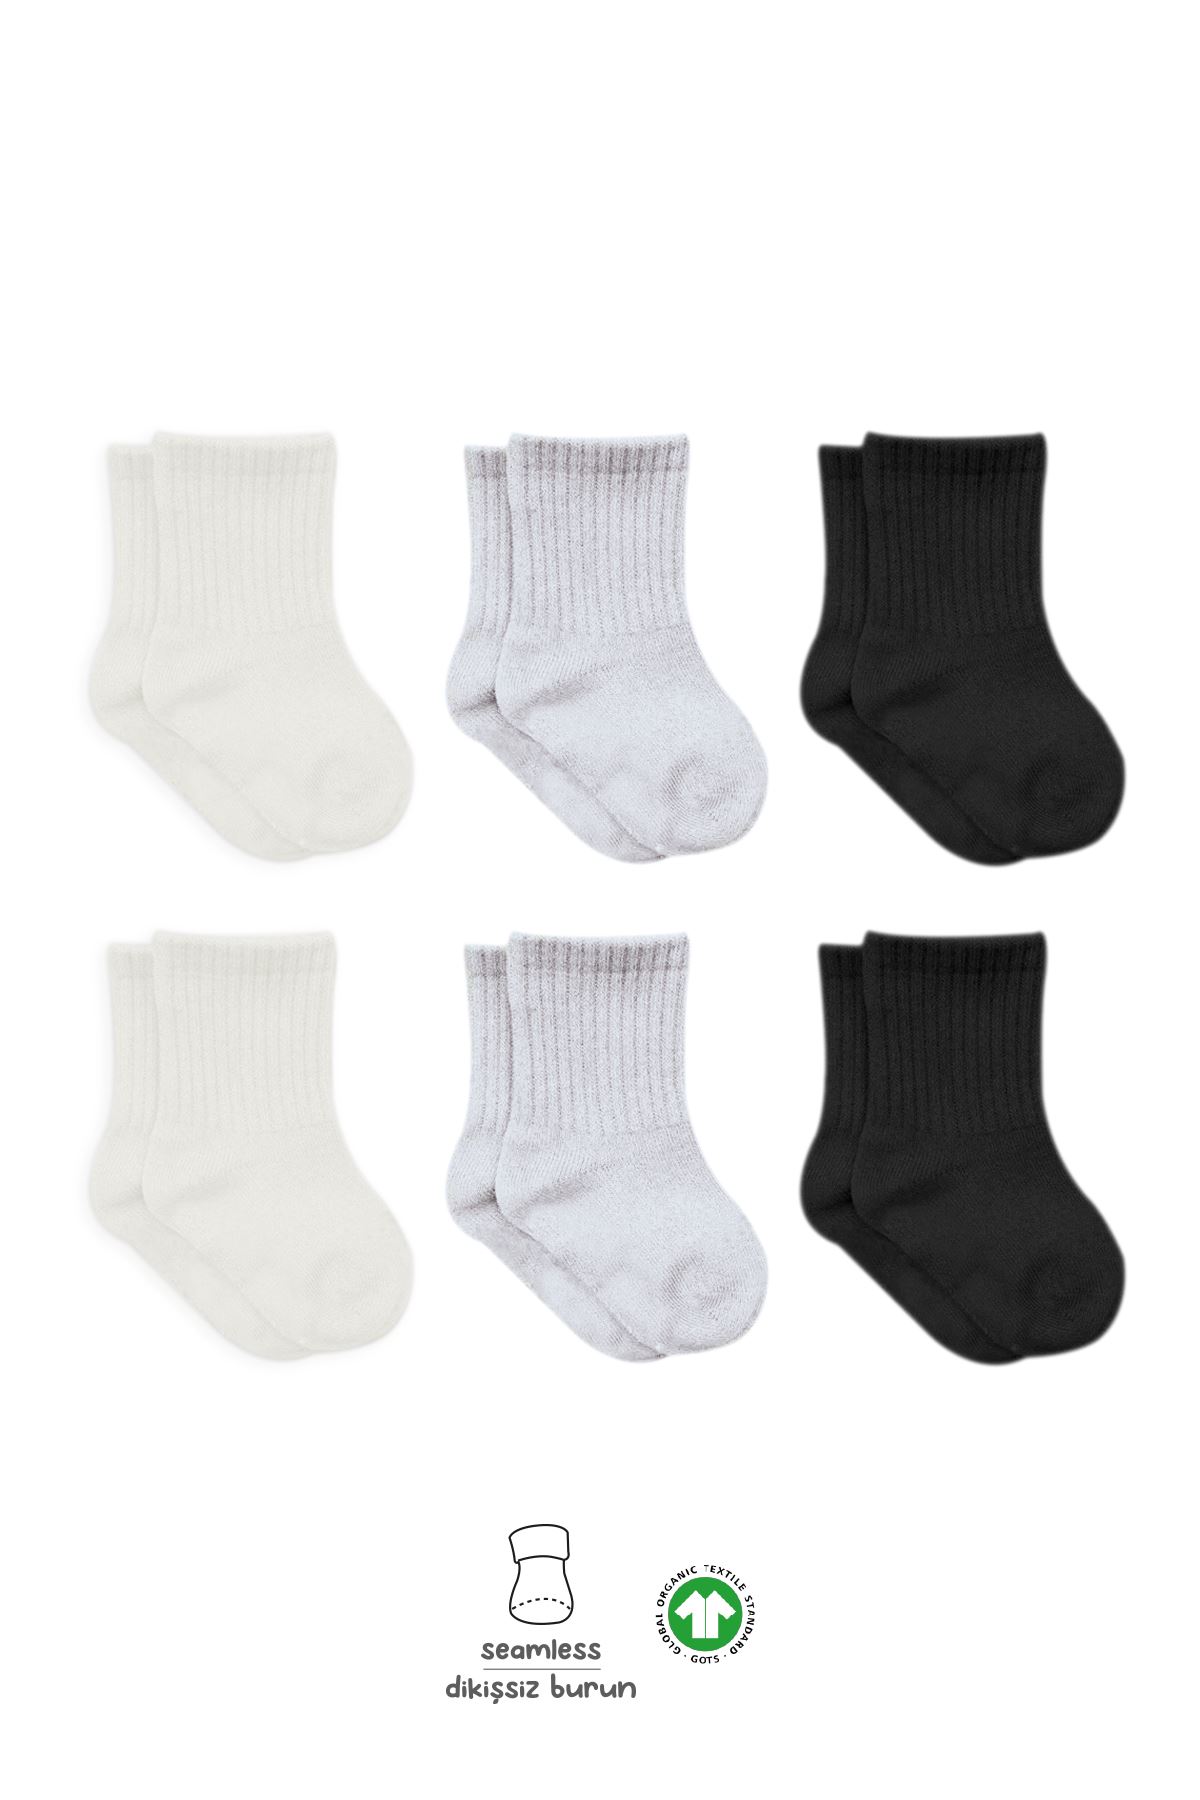 Bistyle Basic 6lı Penye Düz Soket Çorap BS6002 Ekru Gri Siyah